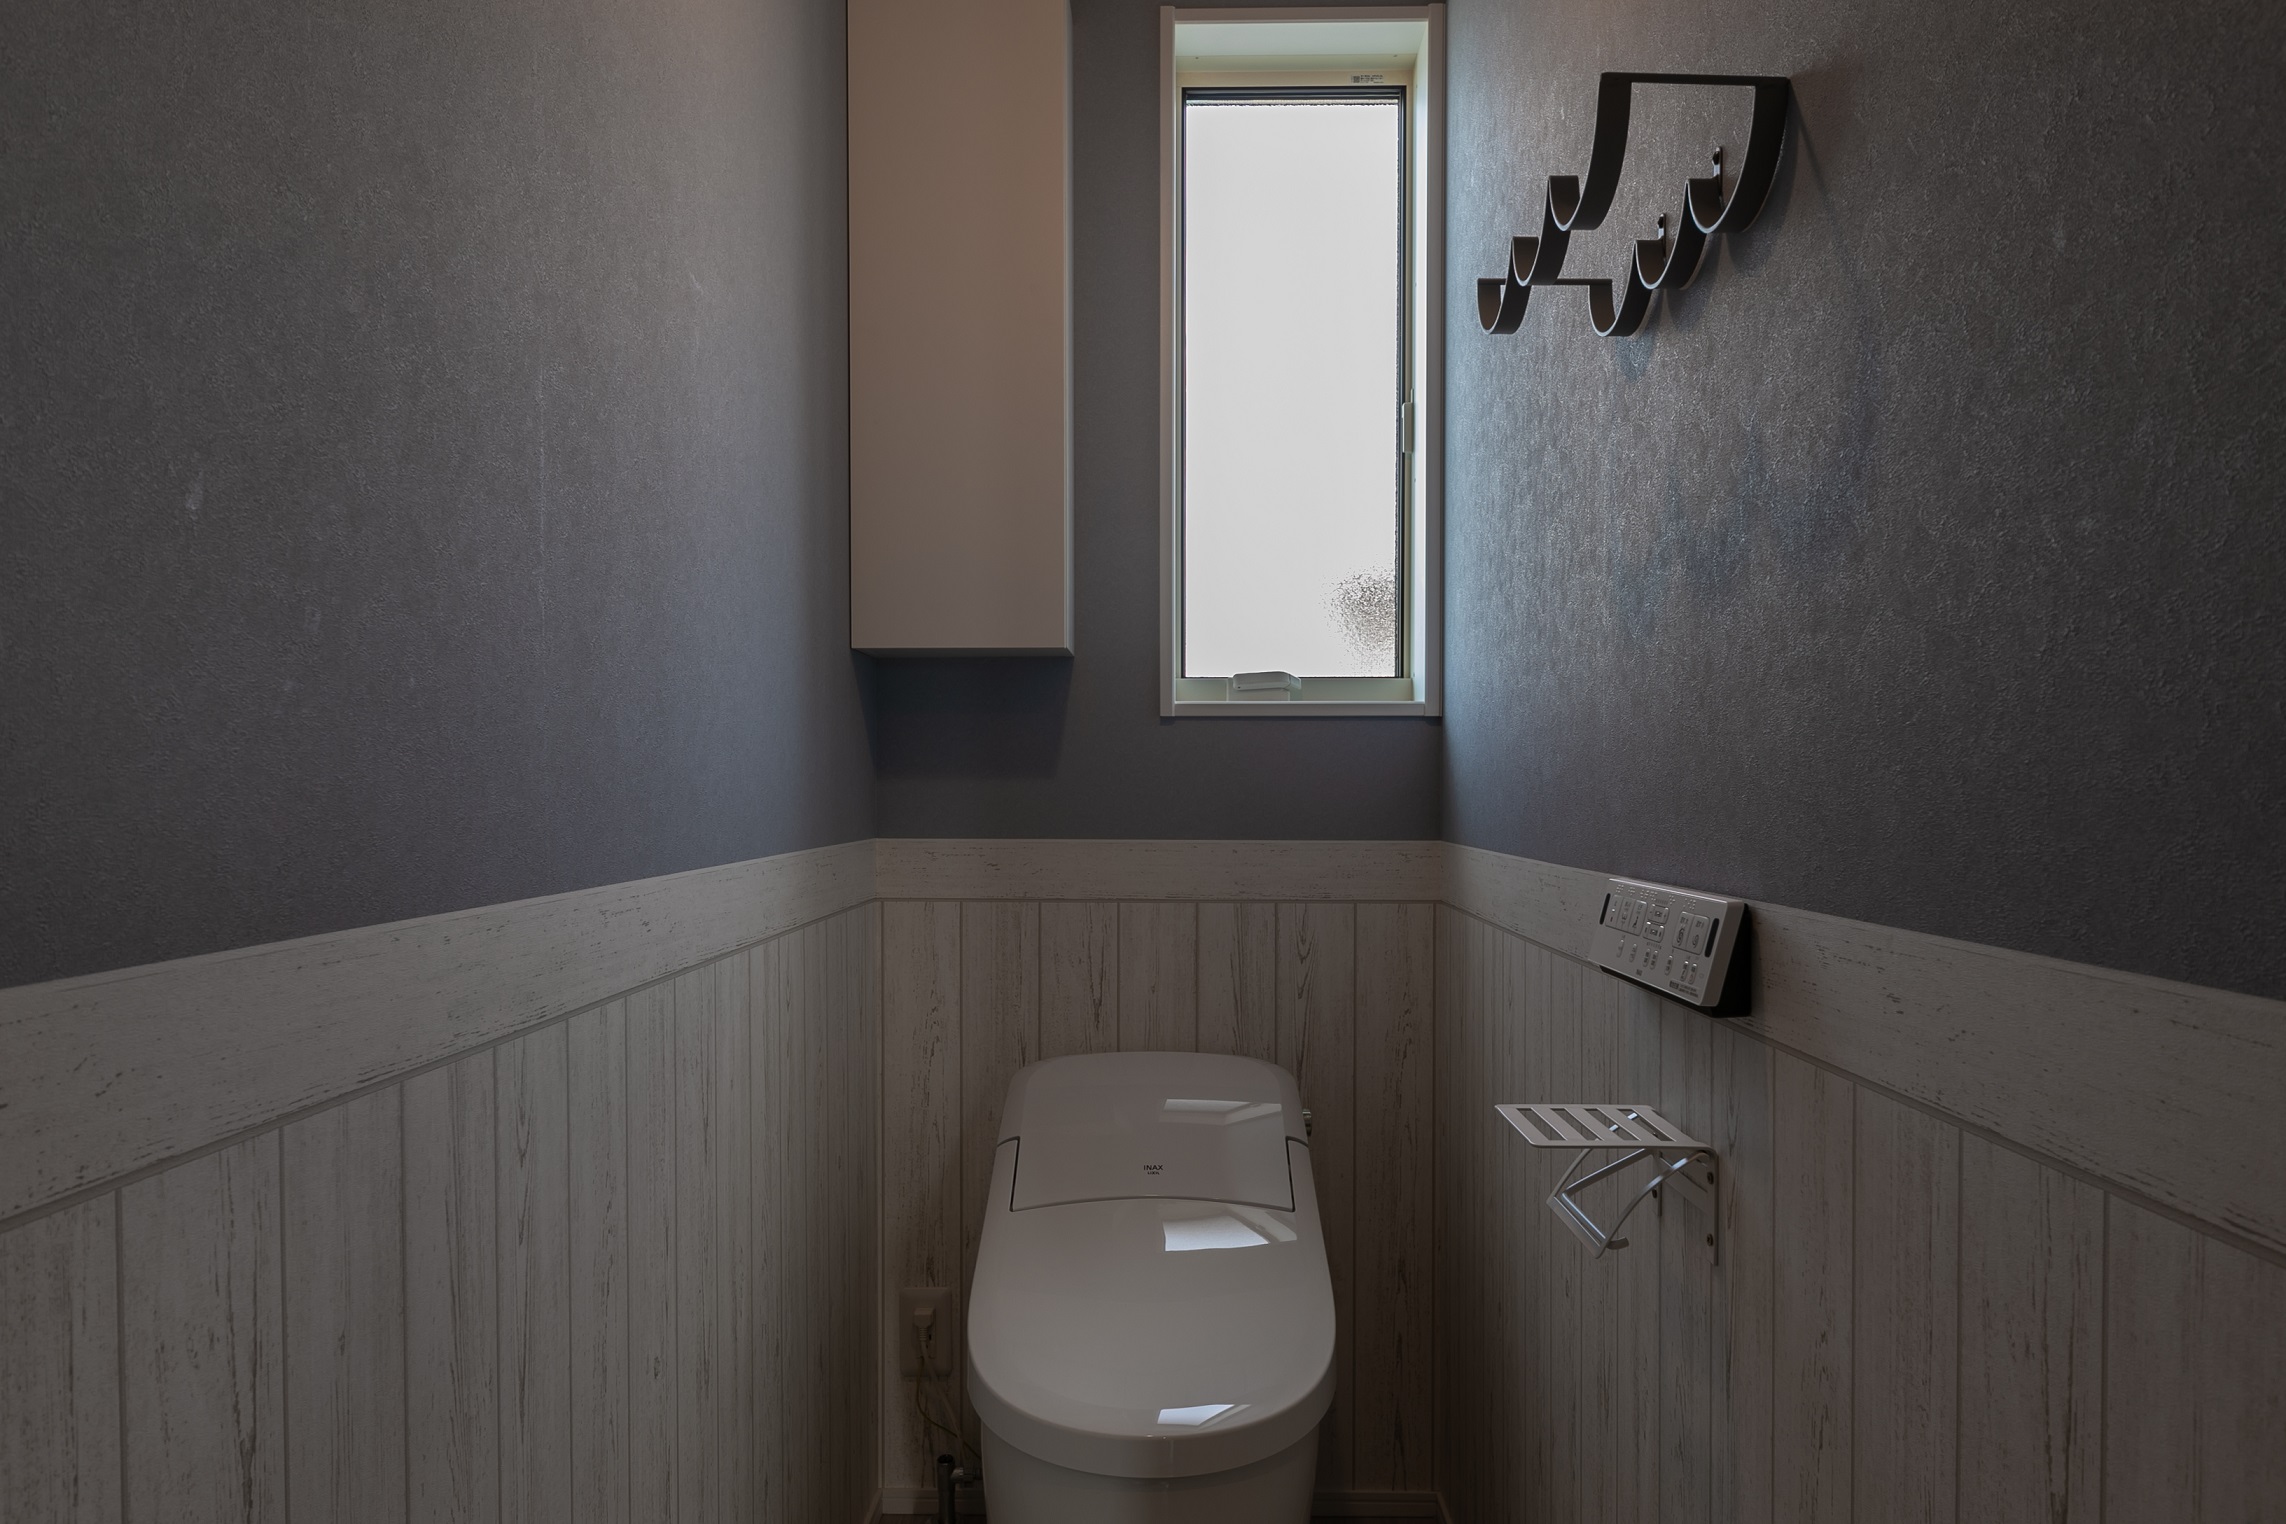 ブルーグレーと腰板風のホワイトがバランスよく、落着きのある雰囲気のトイレです。